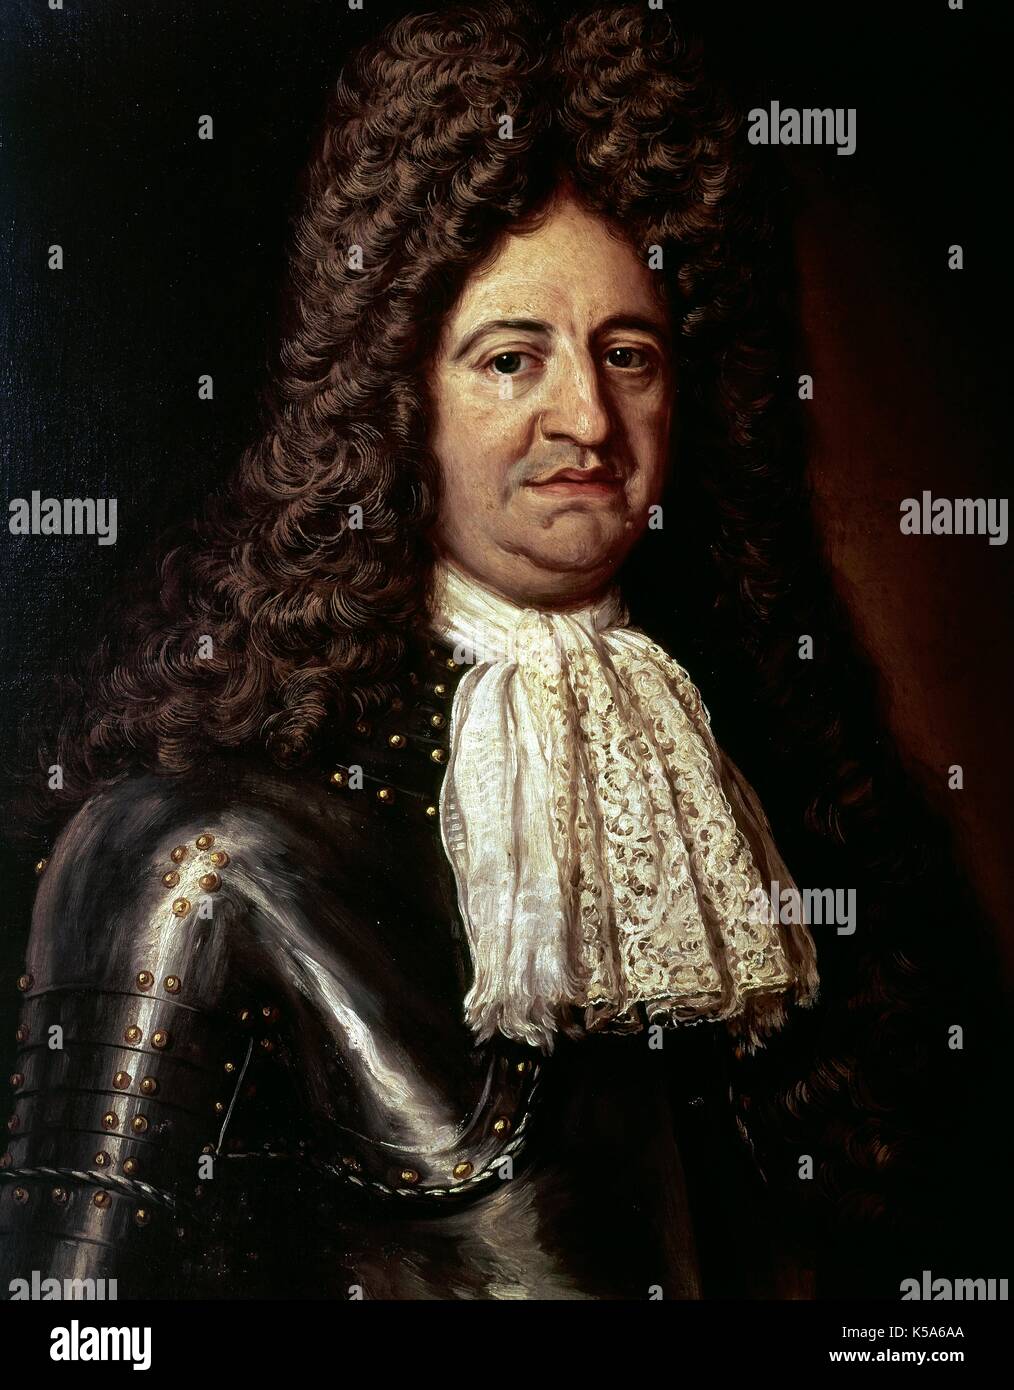 Louis XIV (1638-1715). Rey de Francia (1643-1715). Retrato de Hyacinthe Rigaud, 1702. Hospital de Tavera. Toledo, Castilla La Mancha, España. Foto de stock